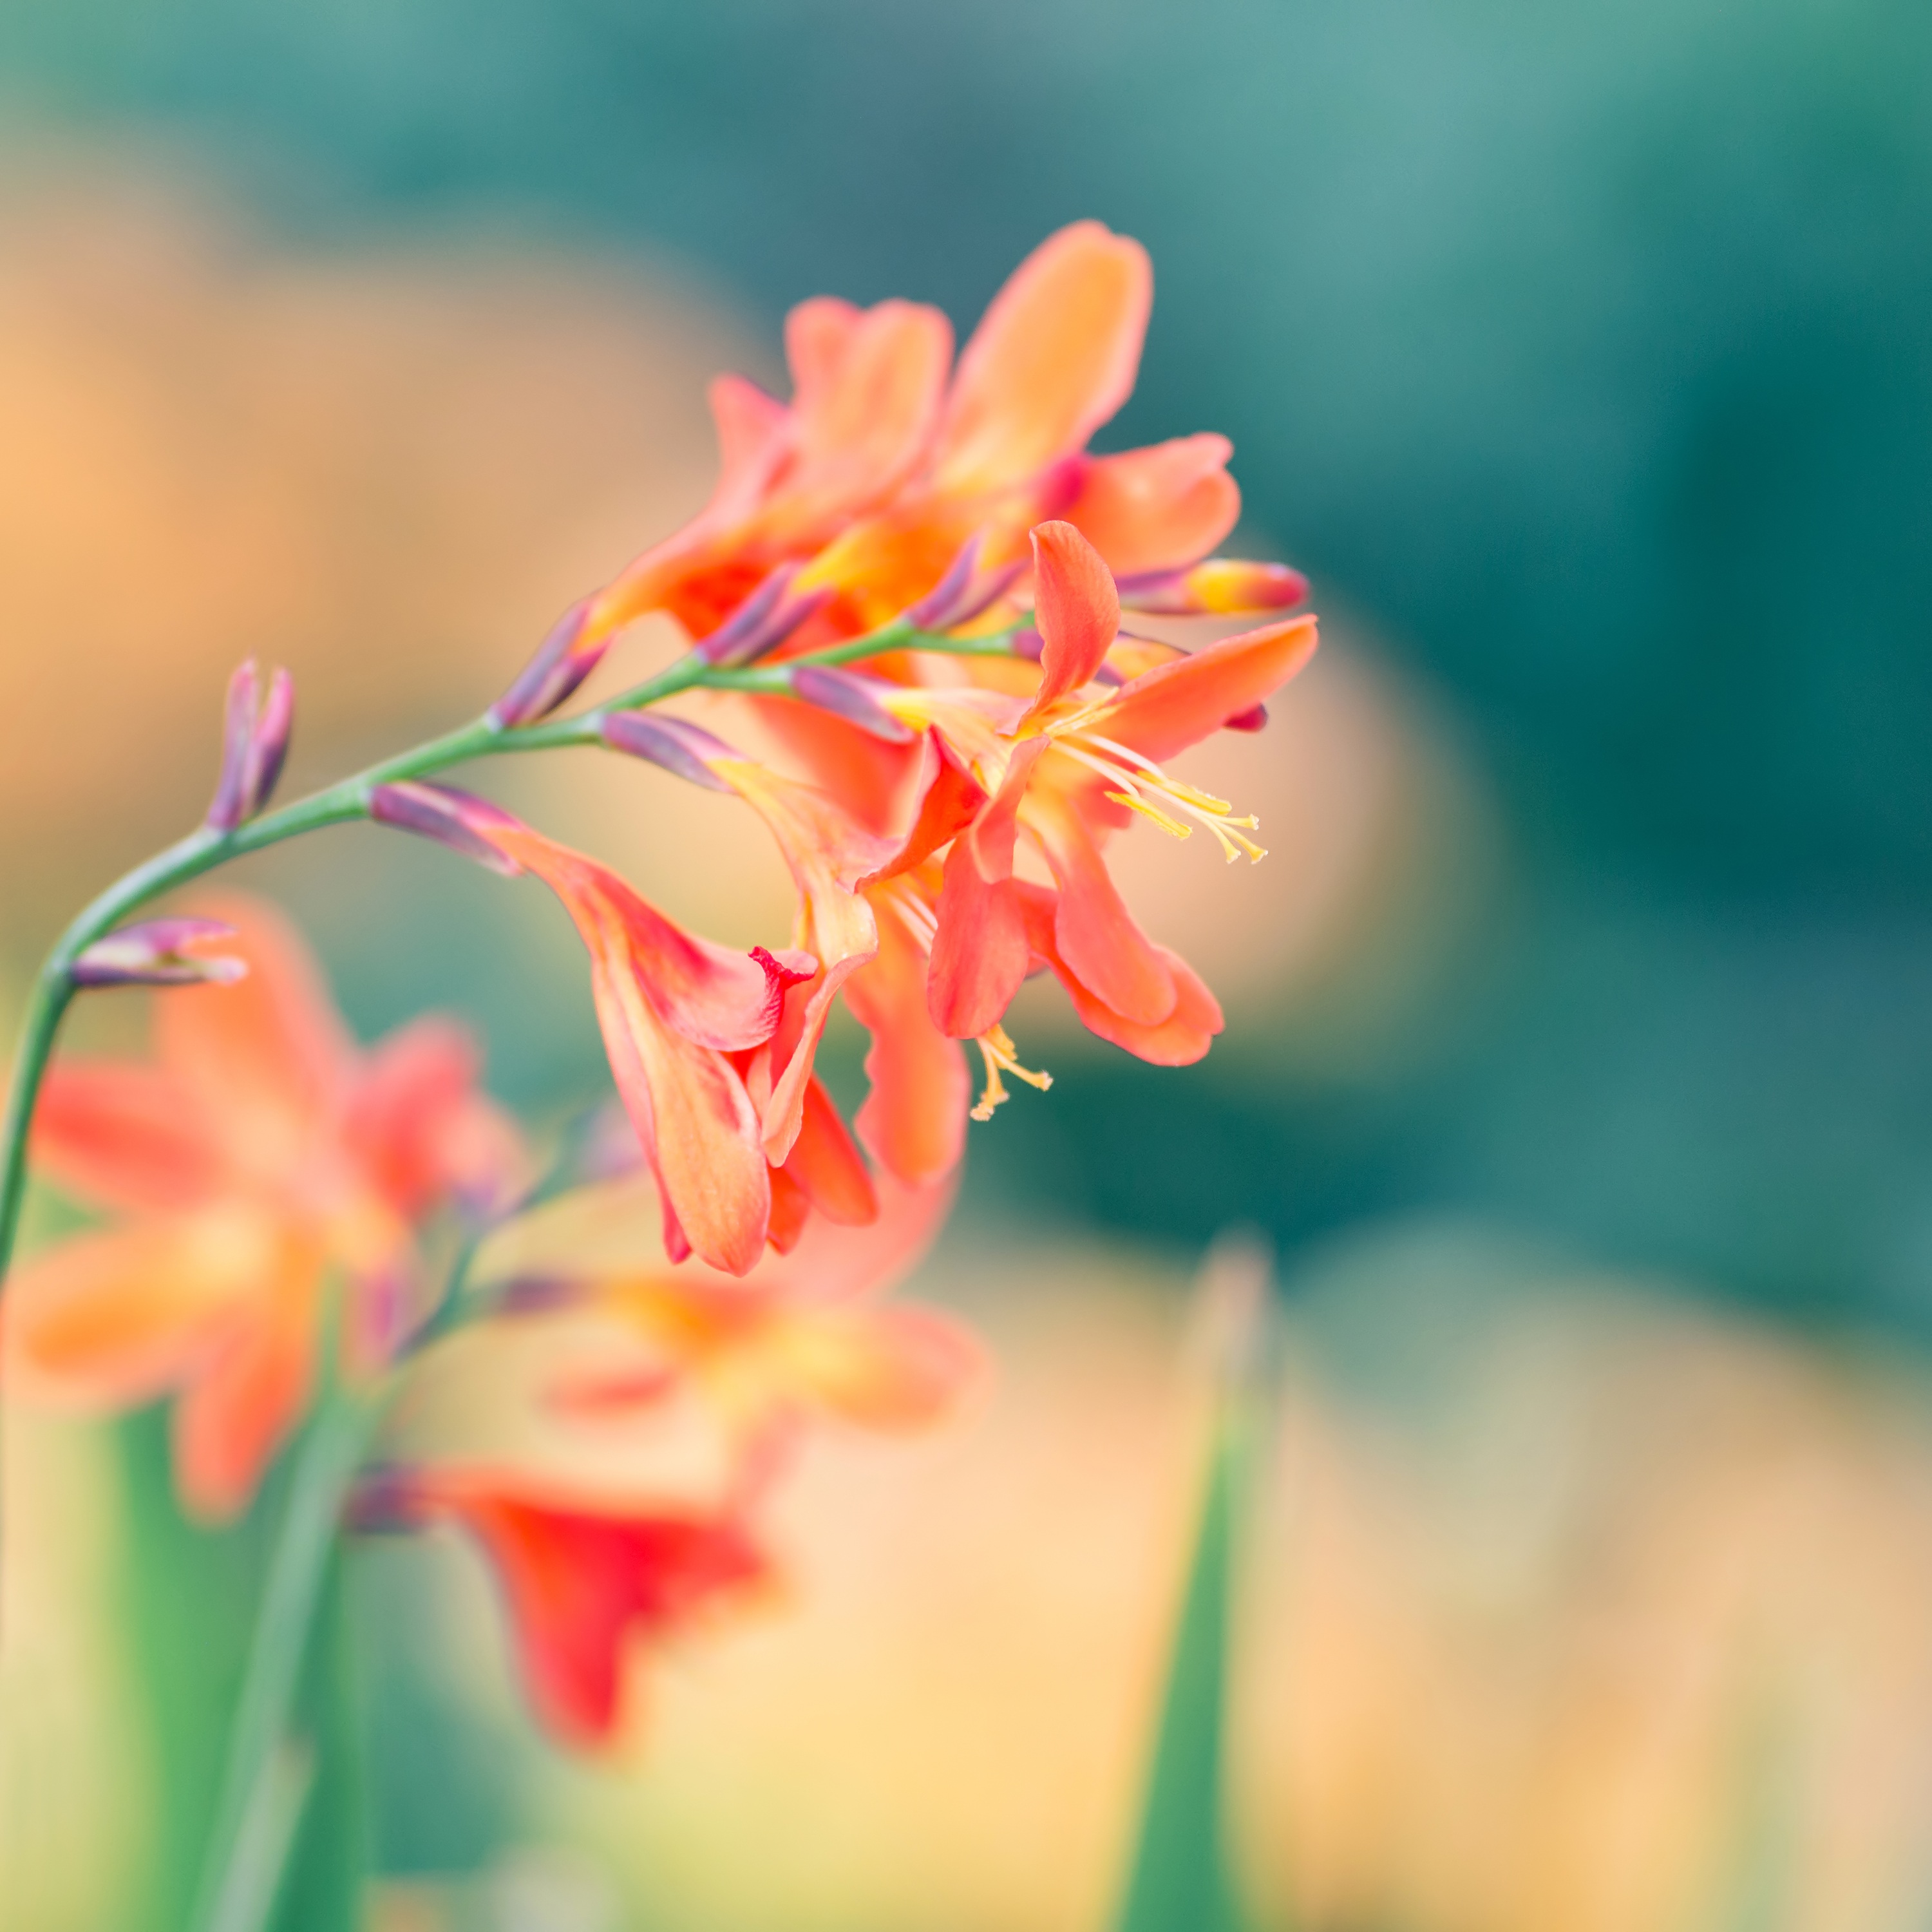 Spring orange flower on blurred background free image download